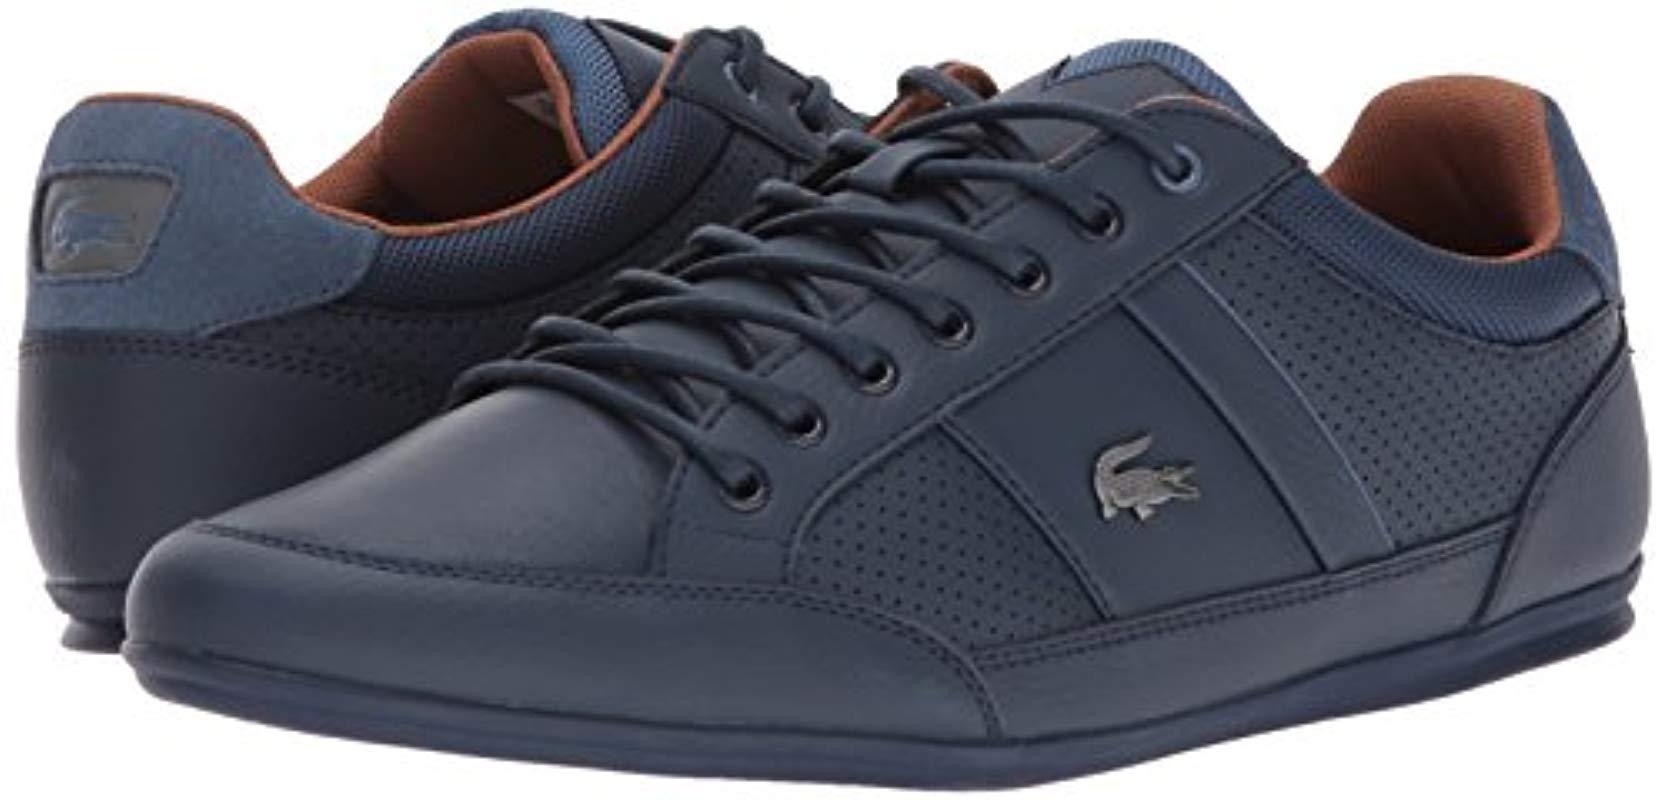 Lacoste Leather Chaymon 317 1 Sneaker 